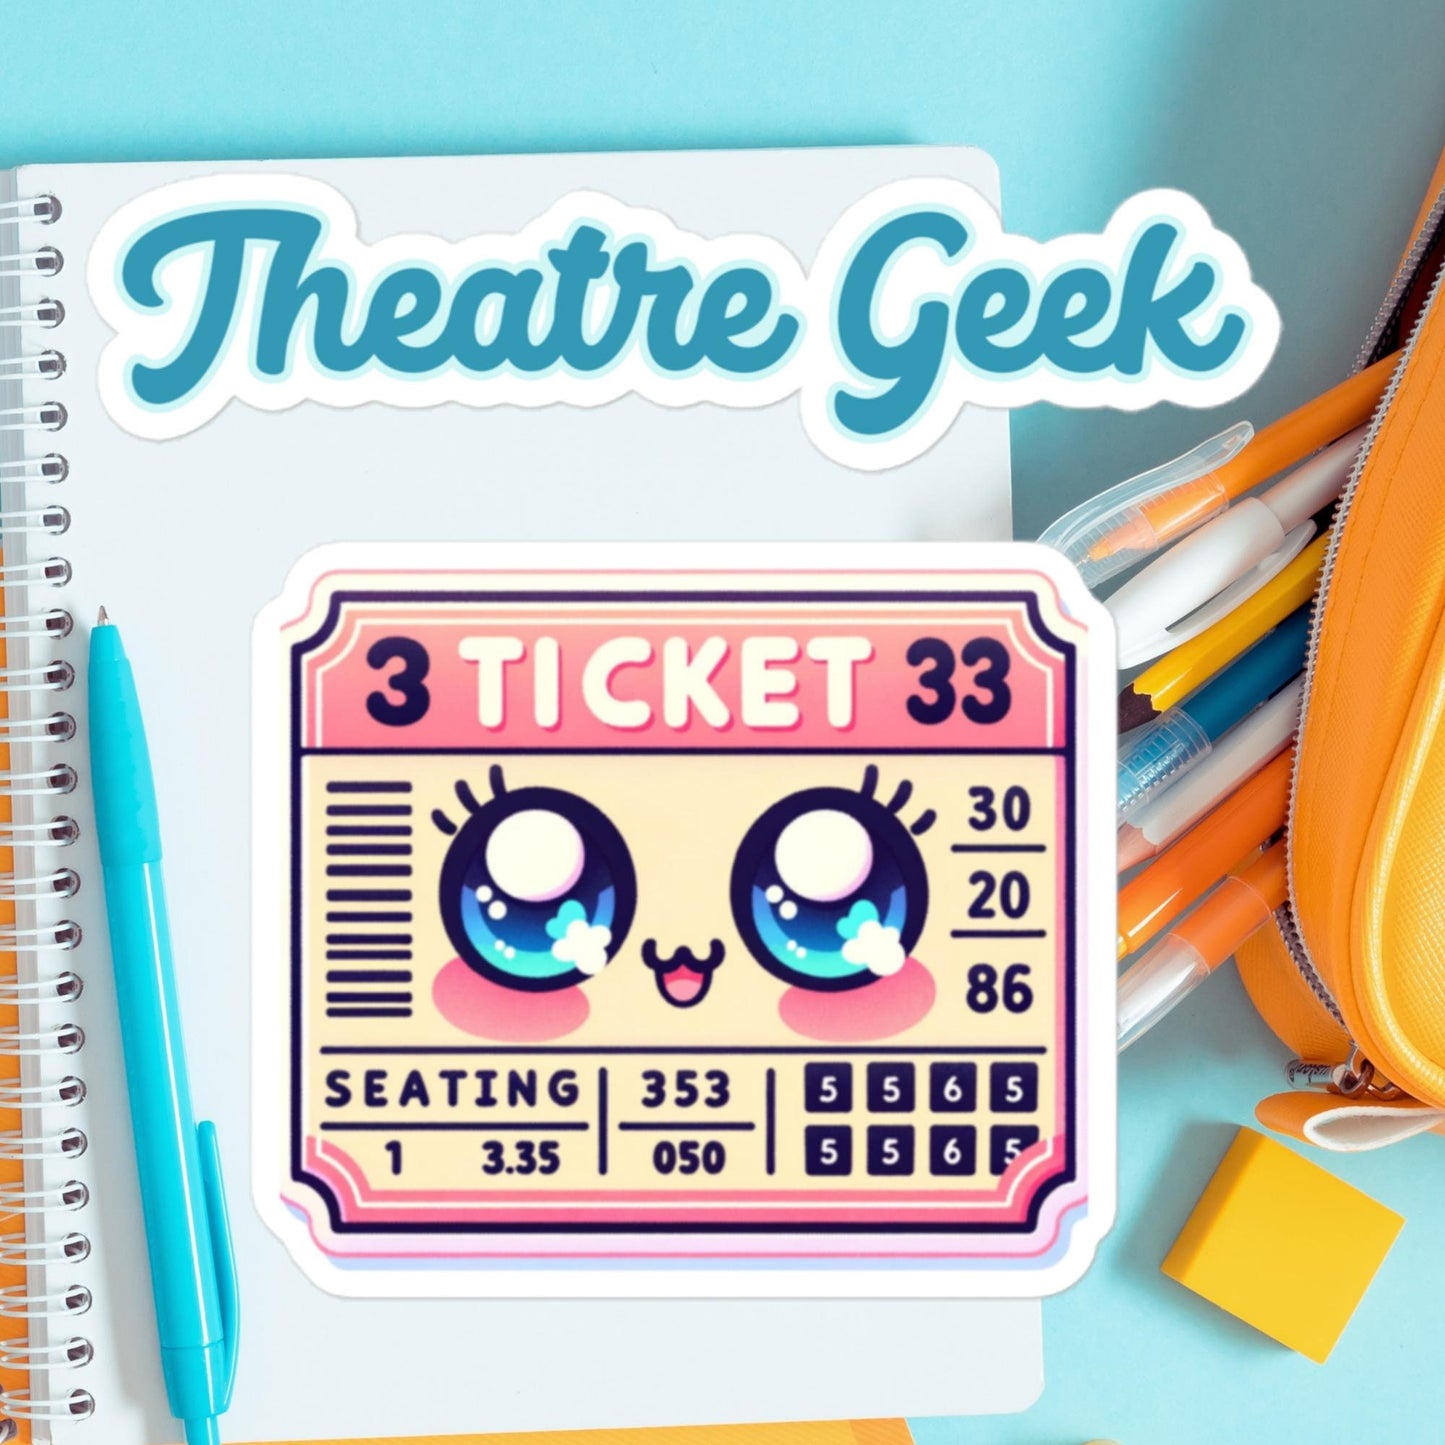 Theatre Geek Ticket Stub Sticker Water bottle sticker theatre stickersBubble-free stickers